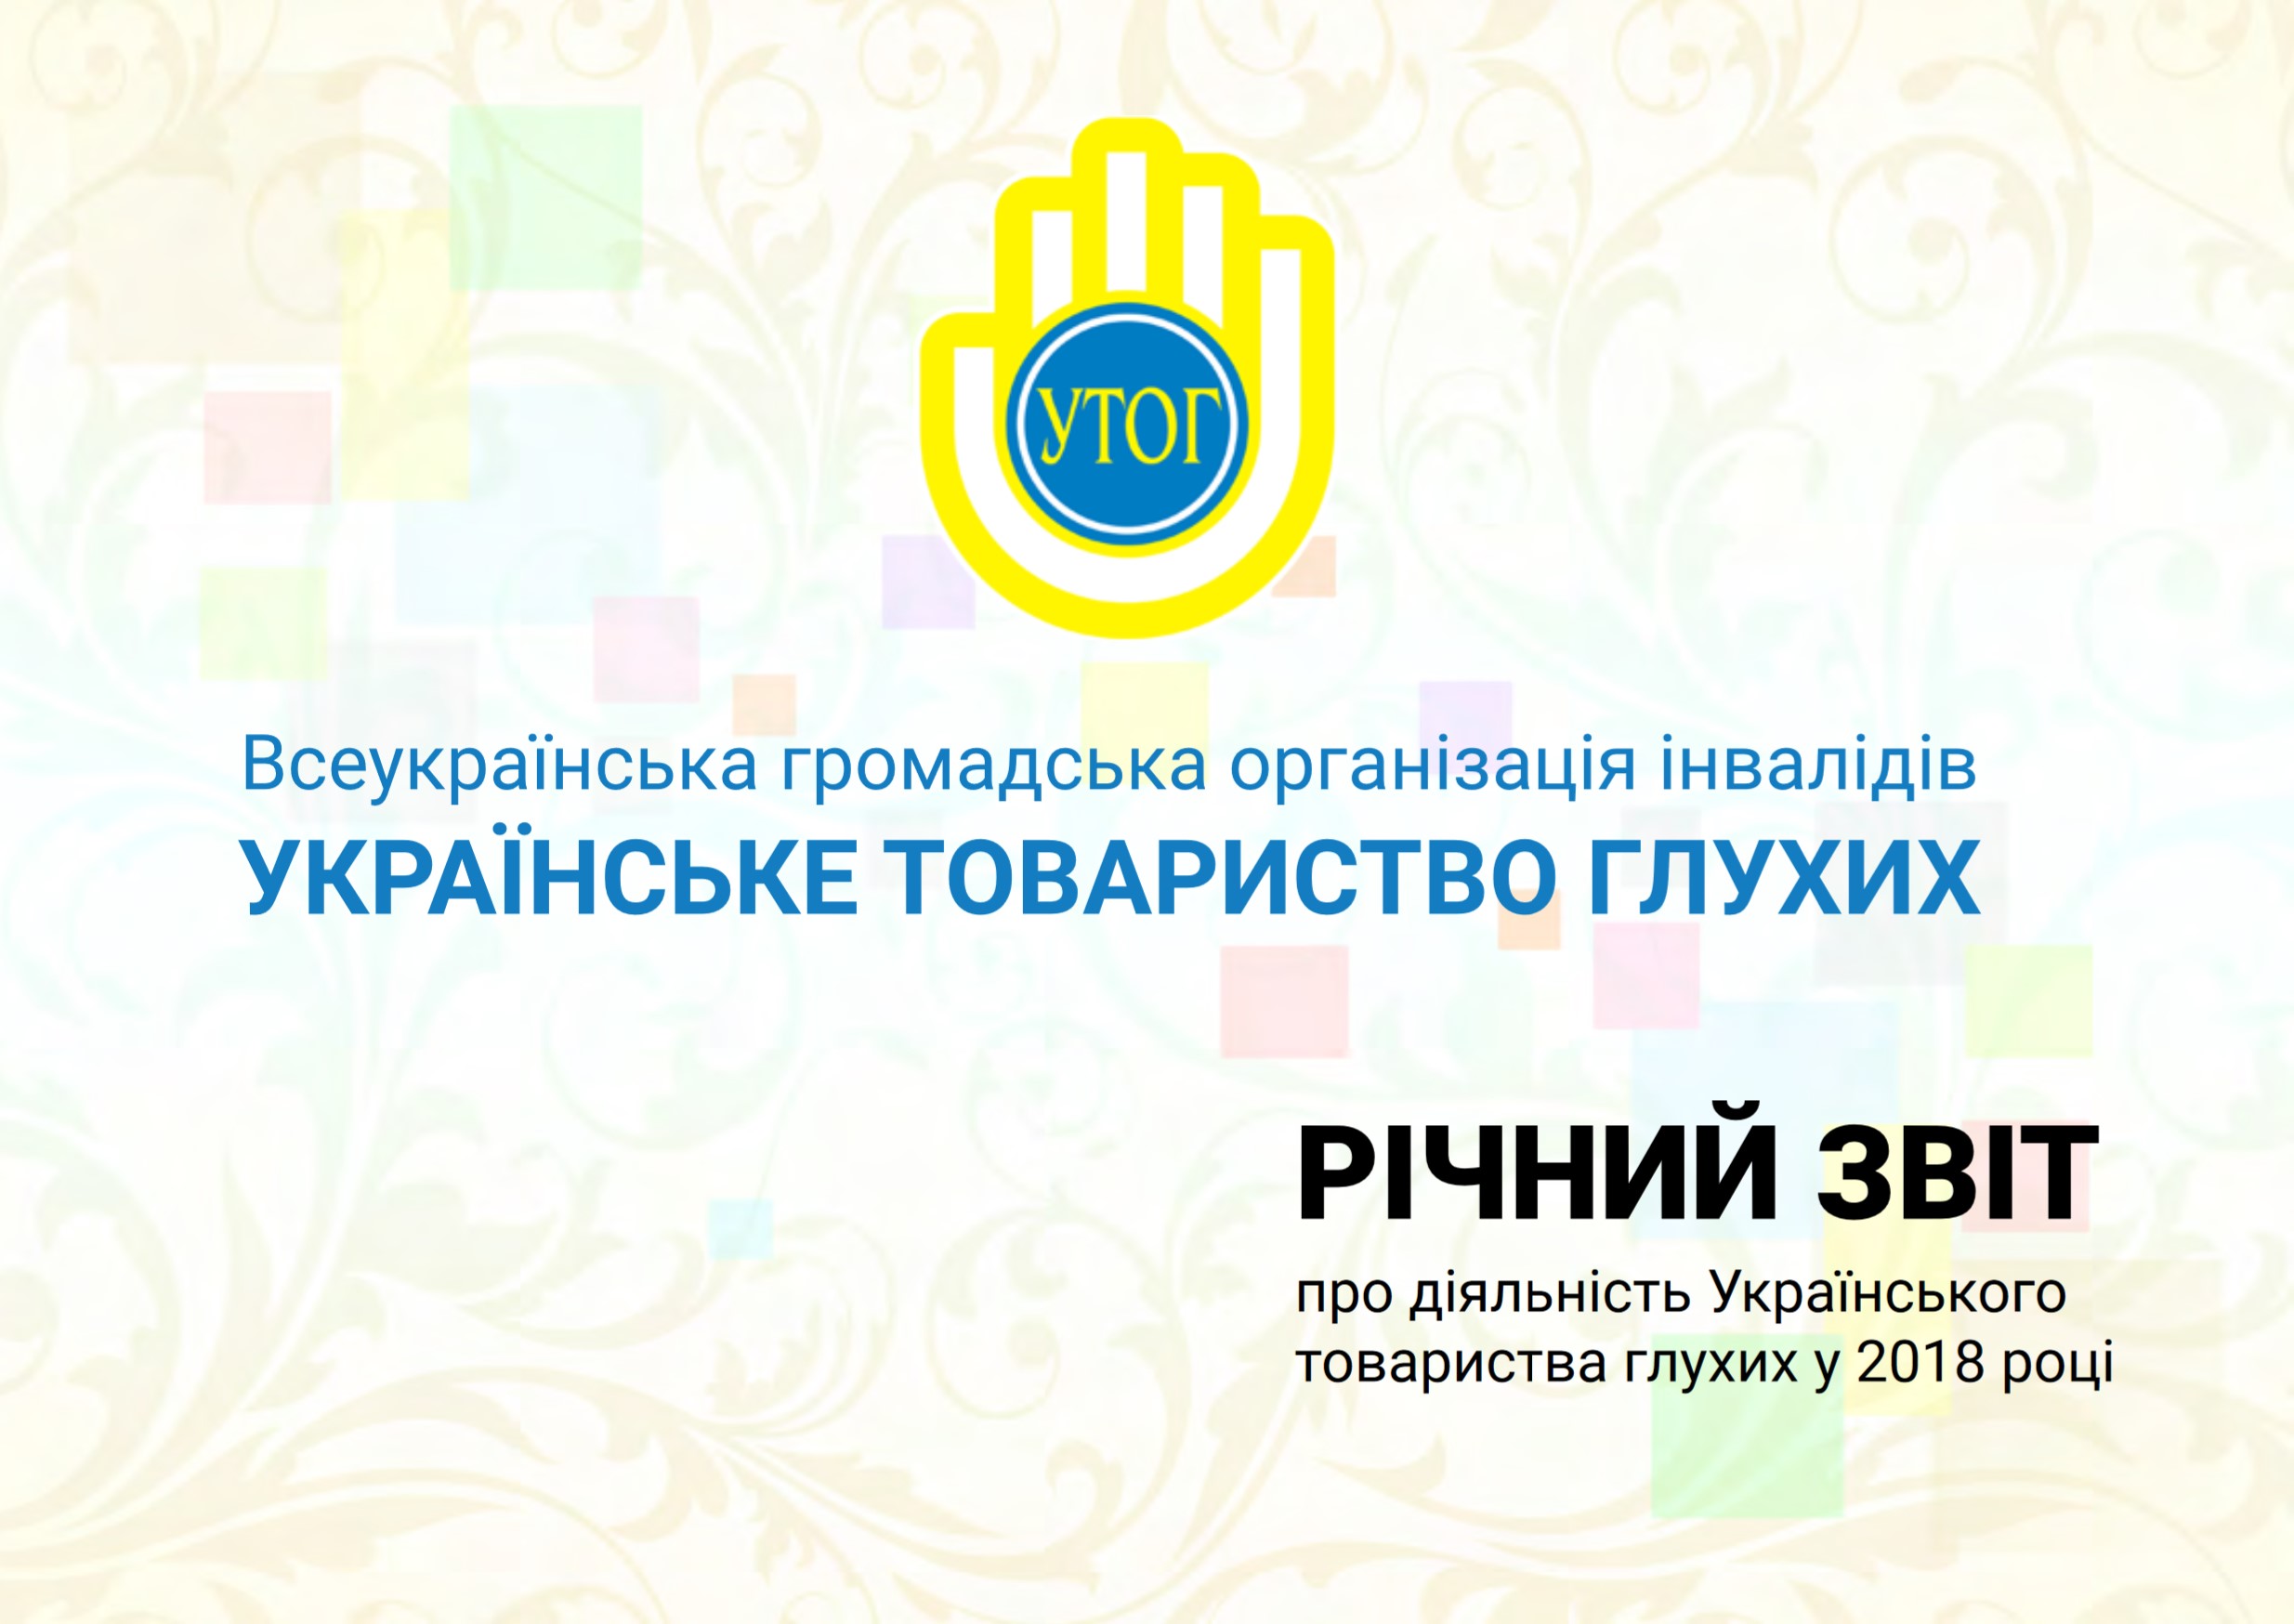 Річний звіт про діяльність Українського товариства глухих у 2018 році